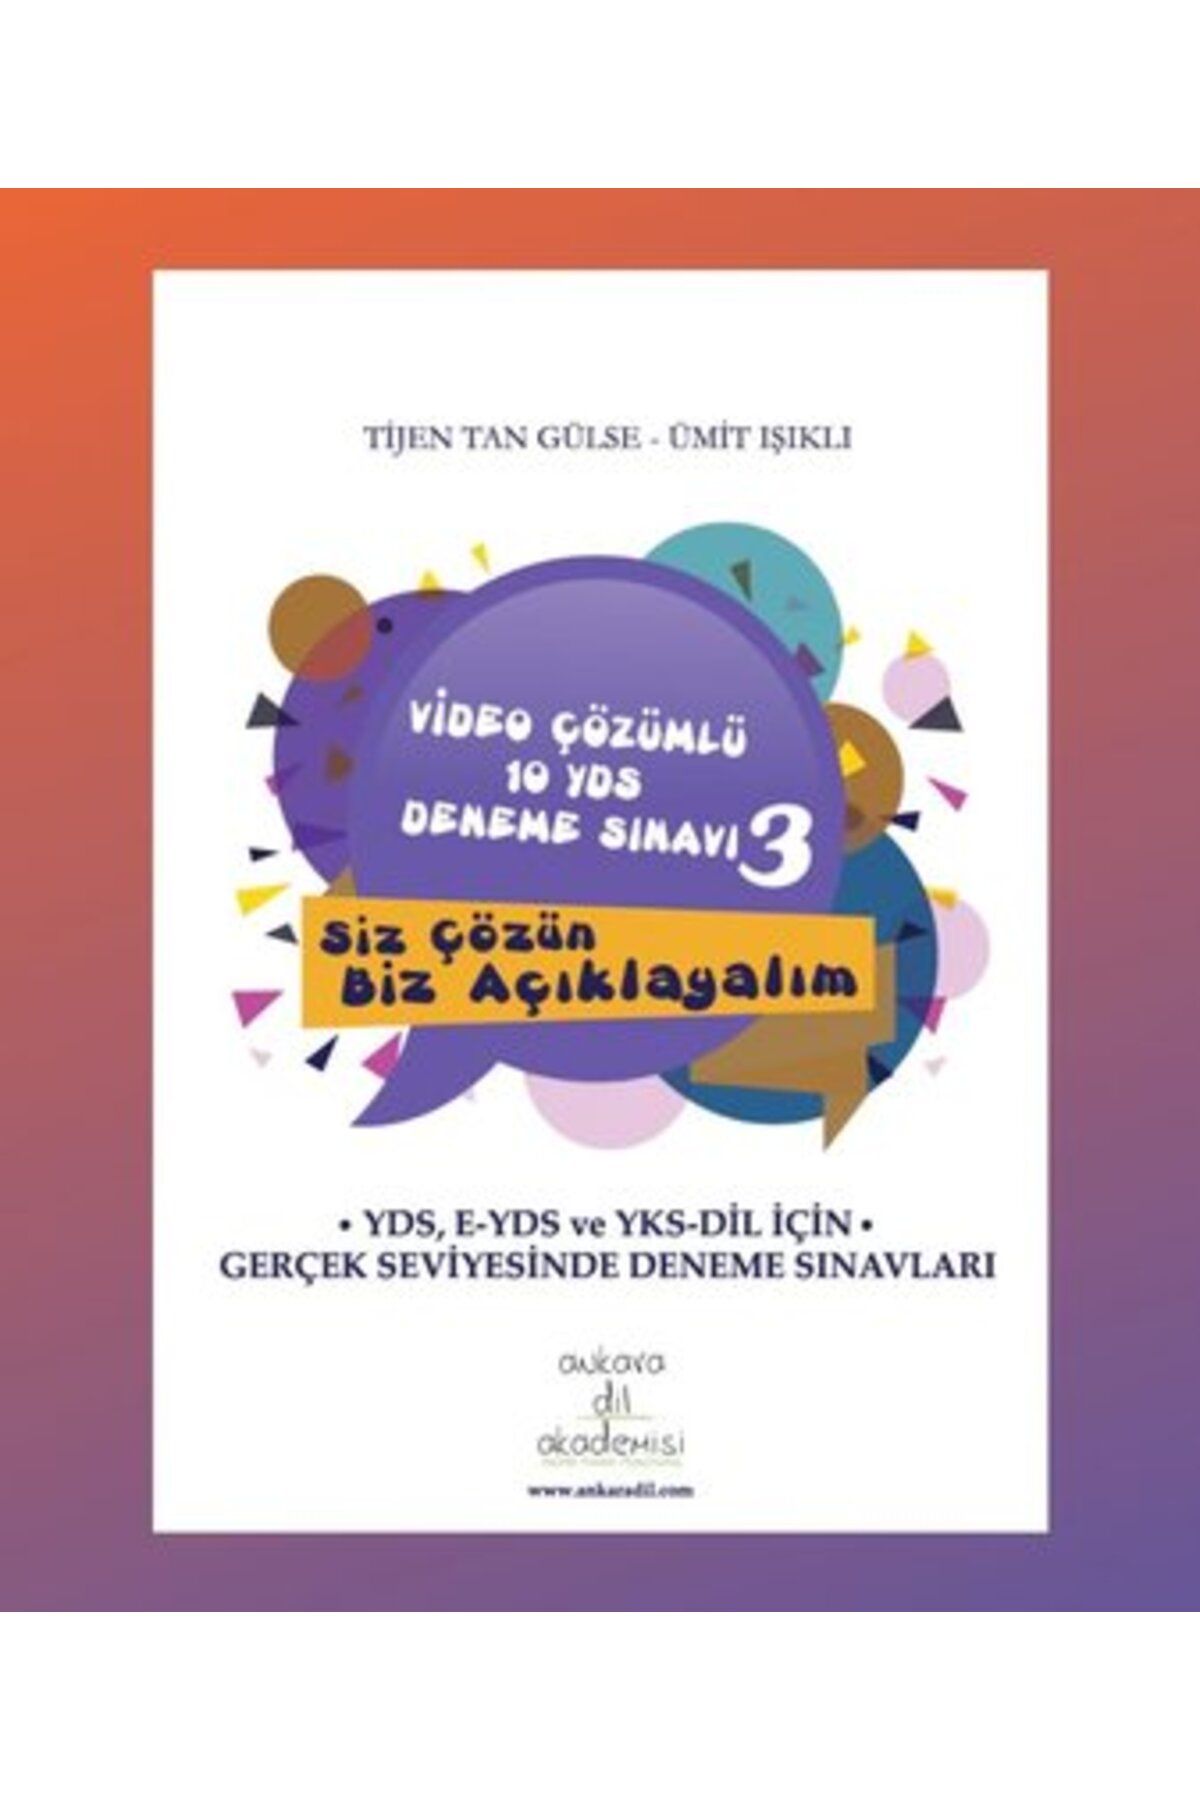 Ankara Dil Akademisi Video Çözümlü 10 YDS Deneme Sınavı